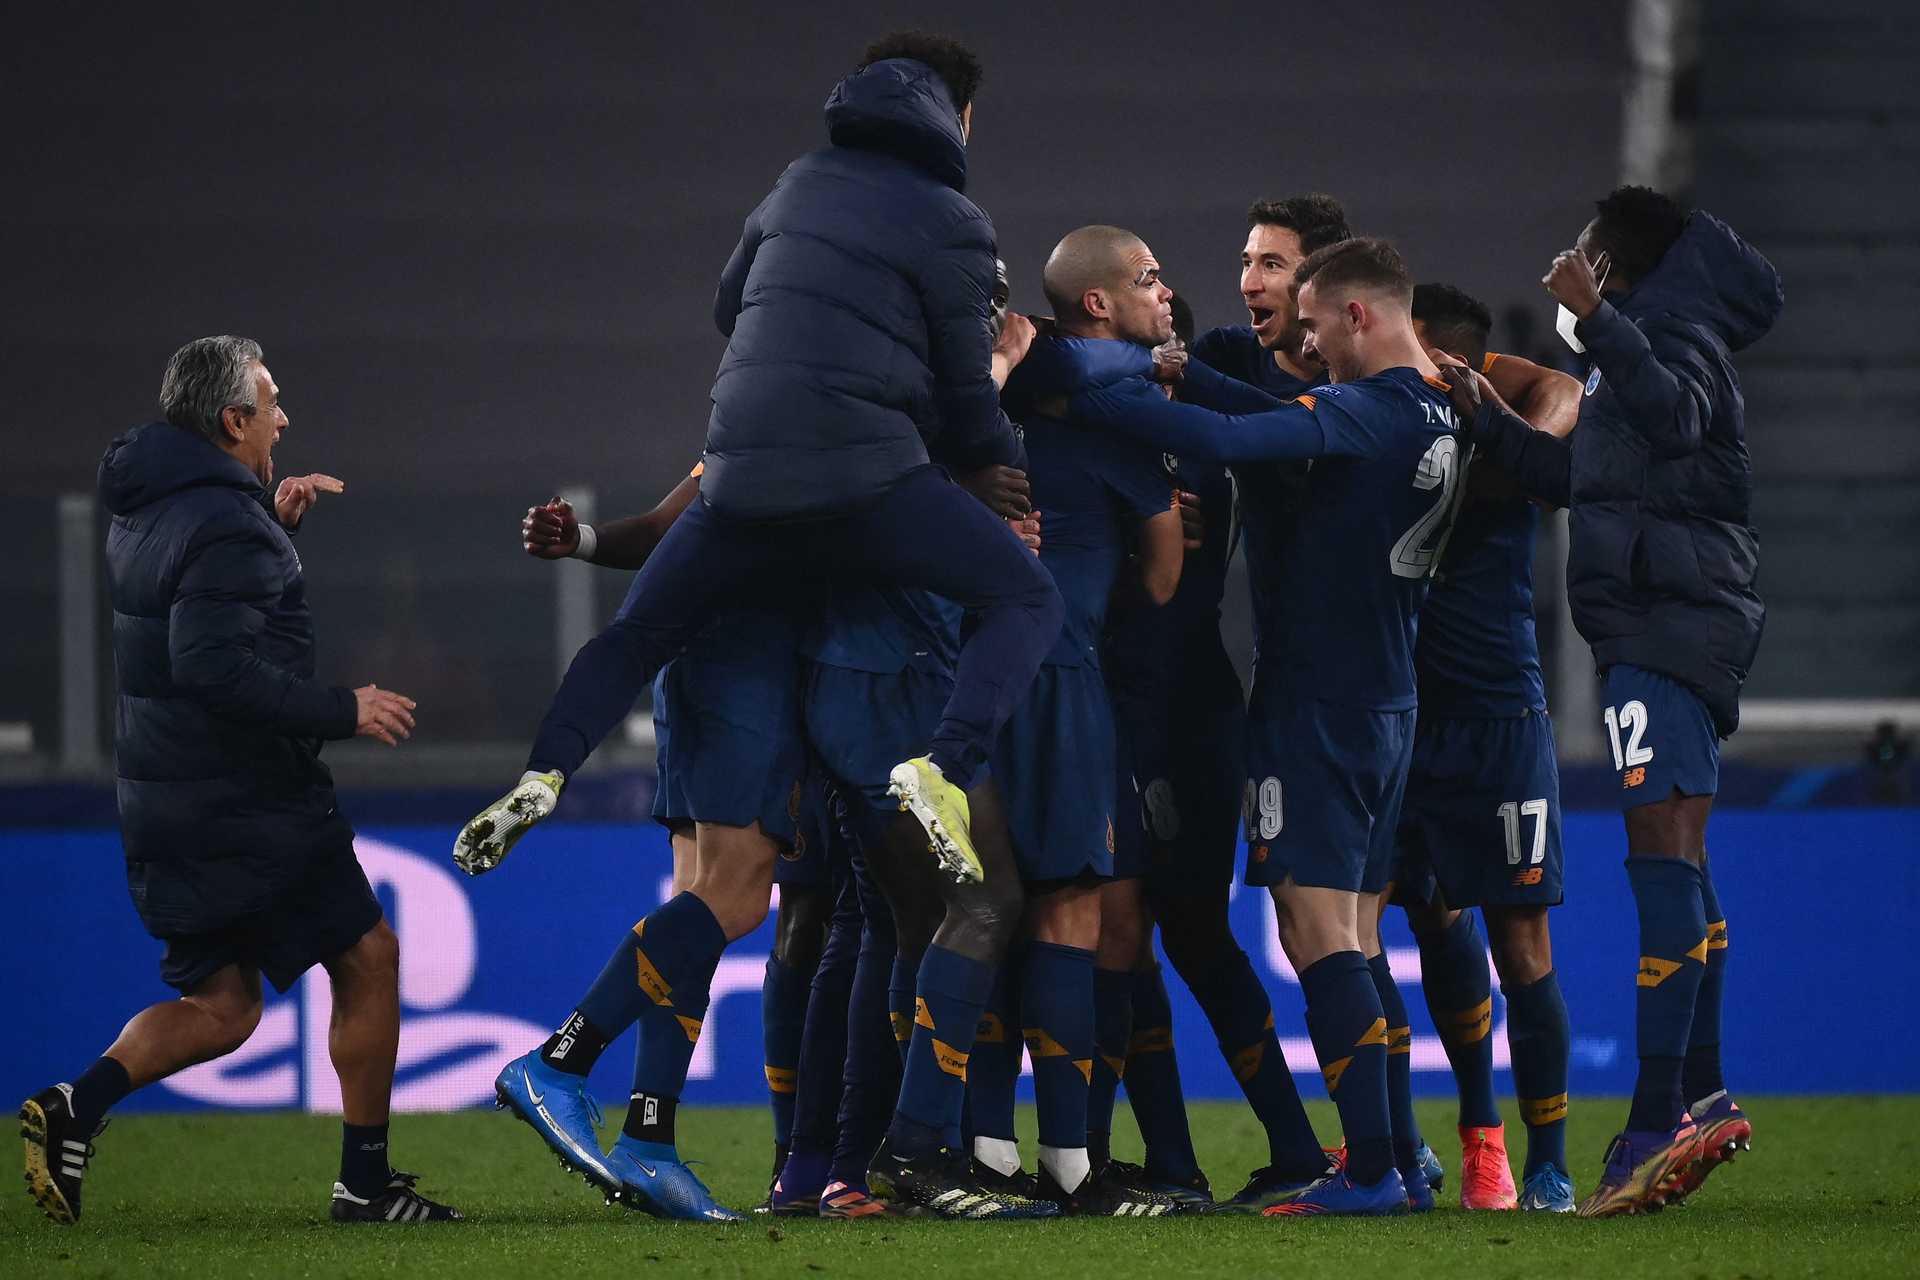 F. C. Porto elimina Juventus e está nos "quartos" da Champions